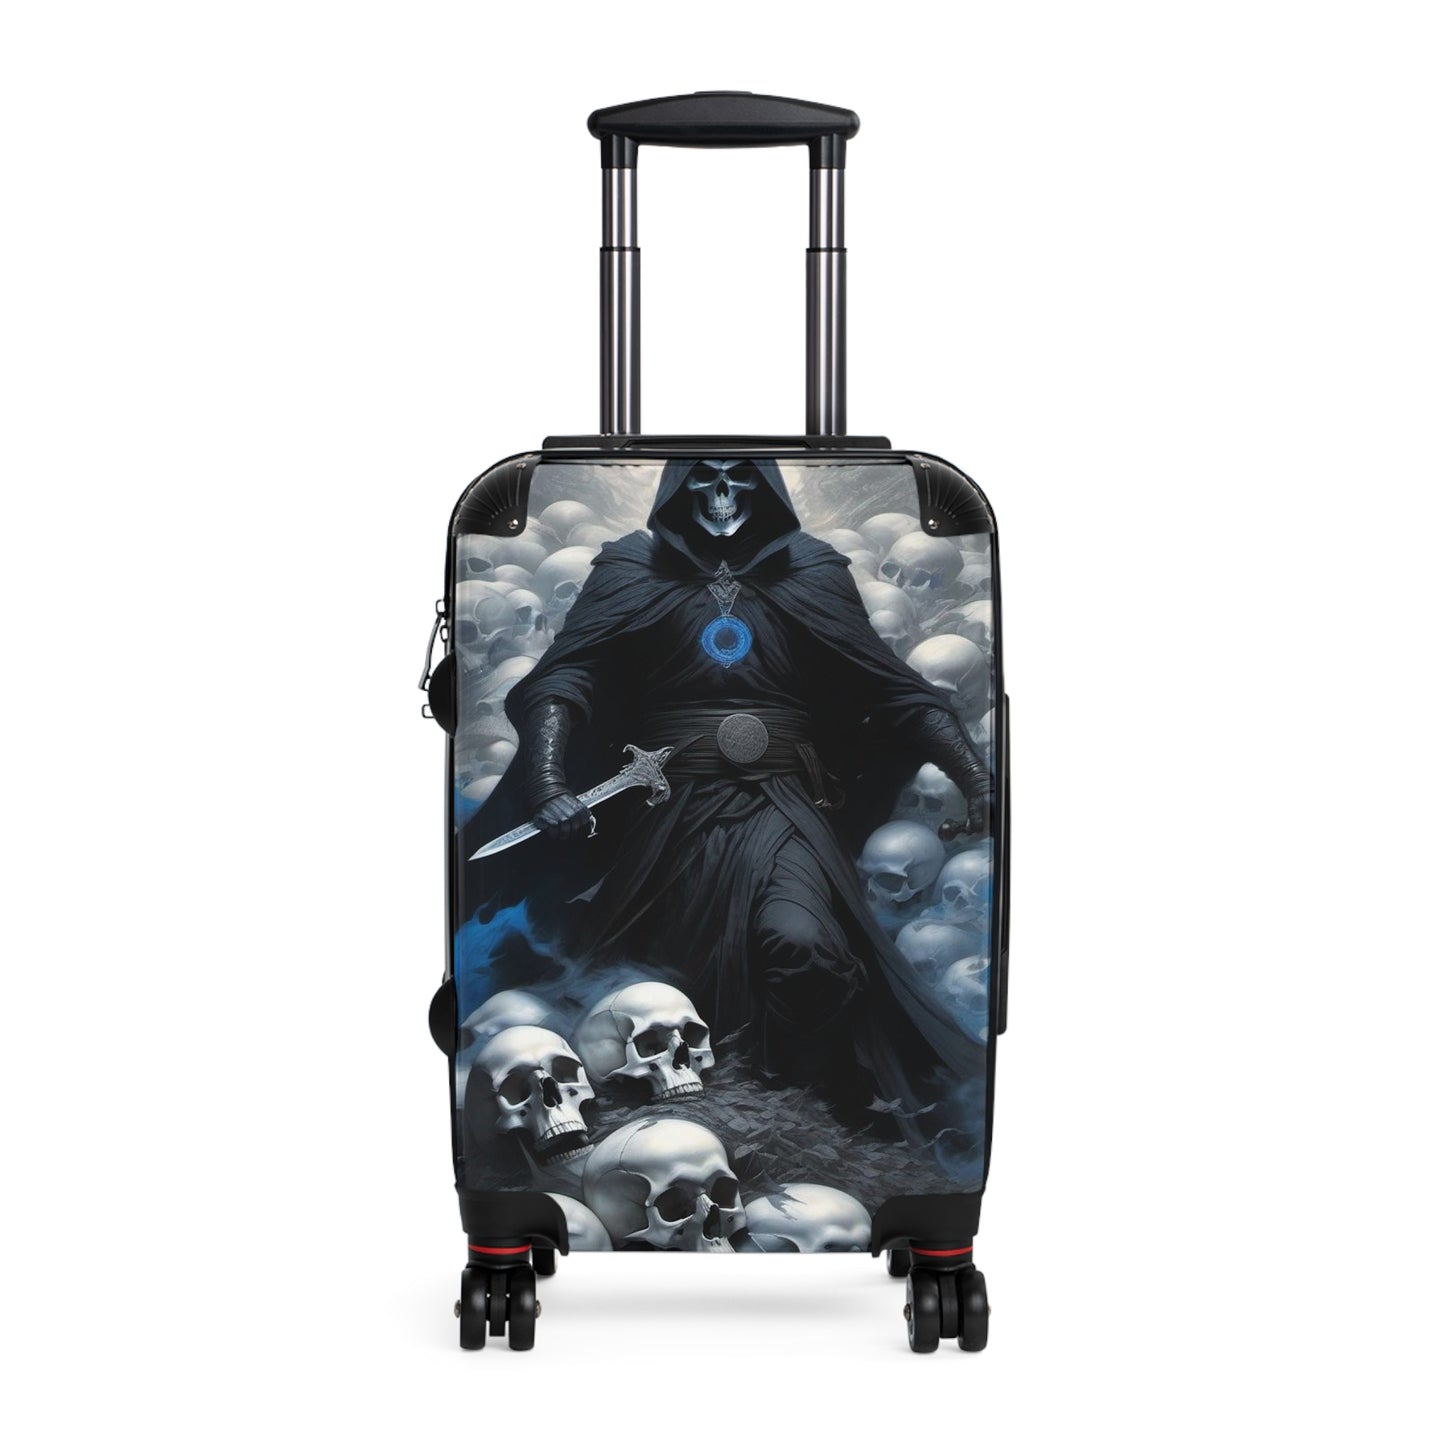 Reaper Suitcase